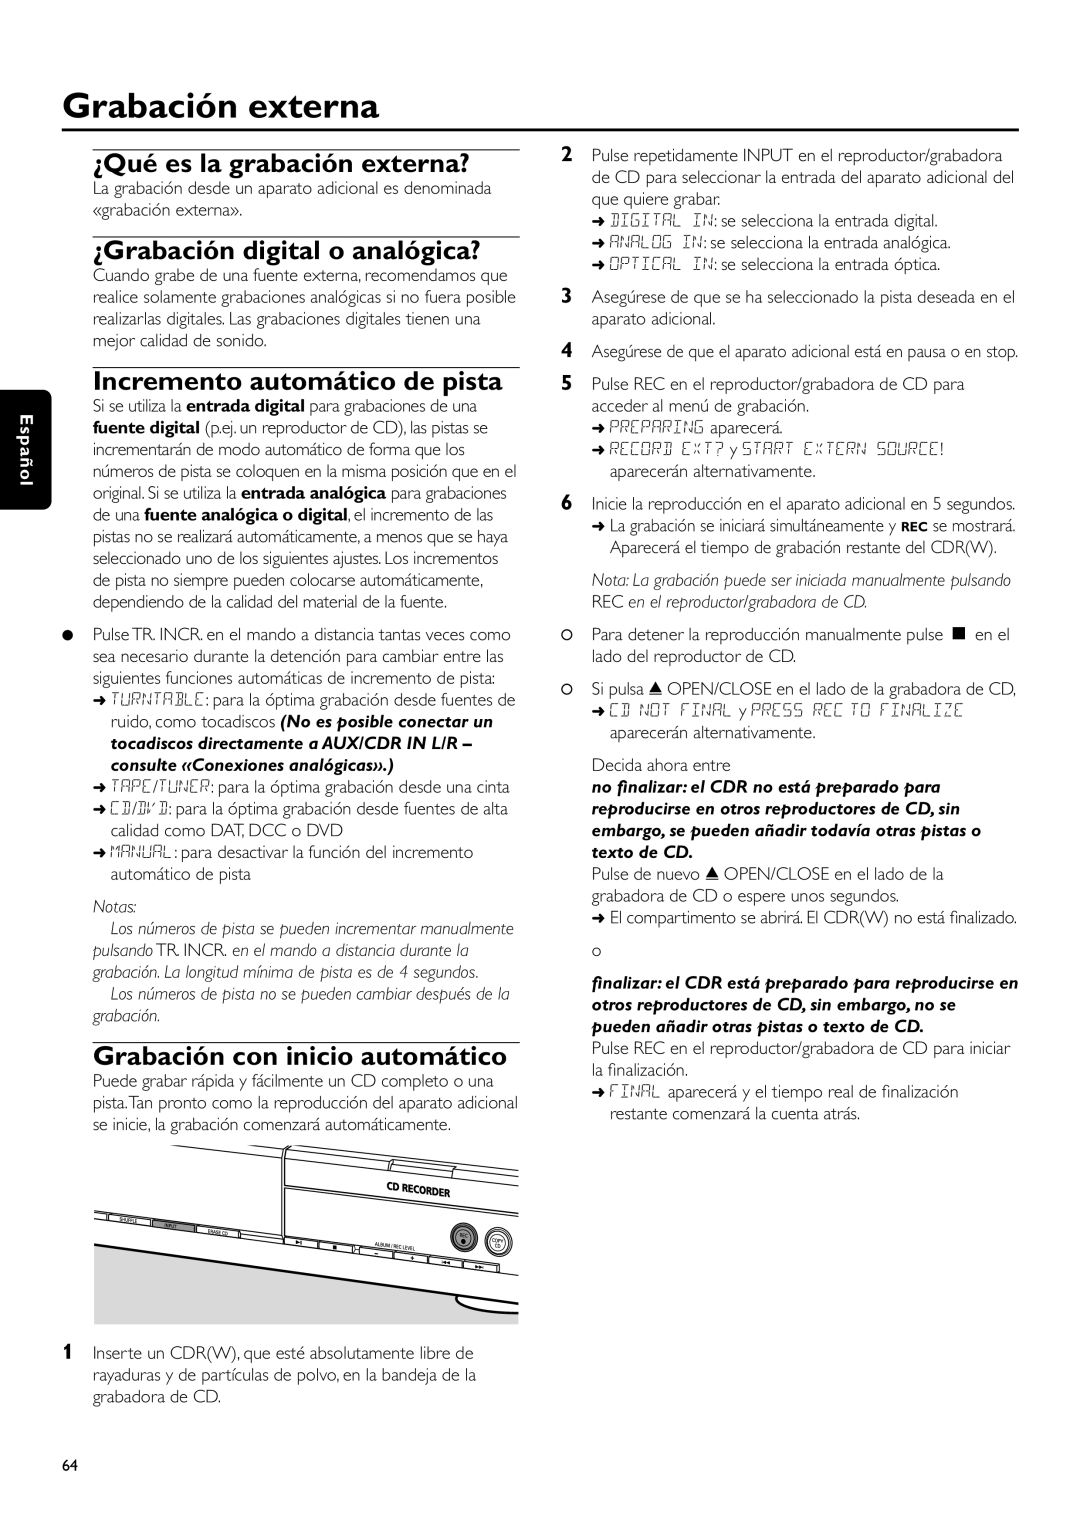 Philips CDR-795 manual Grabación externa, ¿Qué es la grabación externa?, ¿Grabación digital o analógica?, Español, Notas 